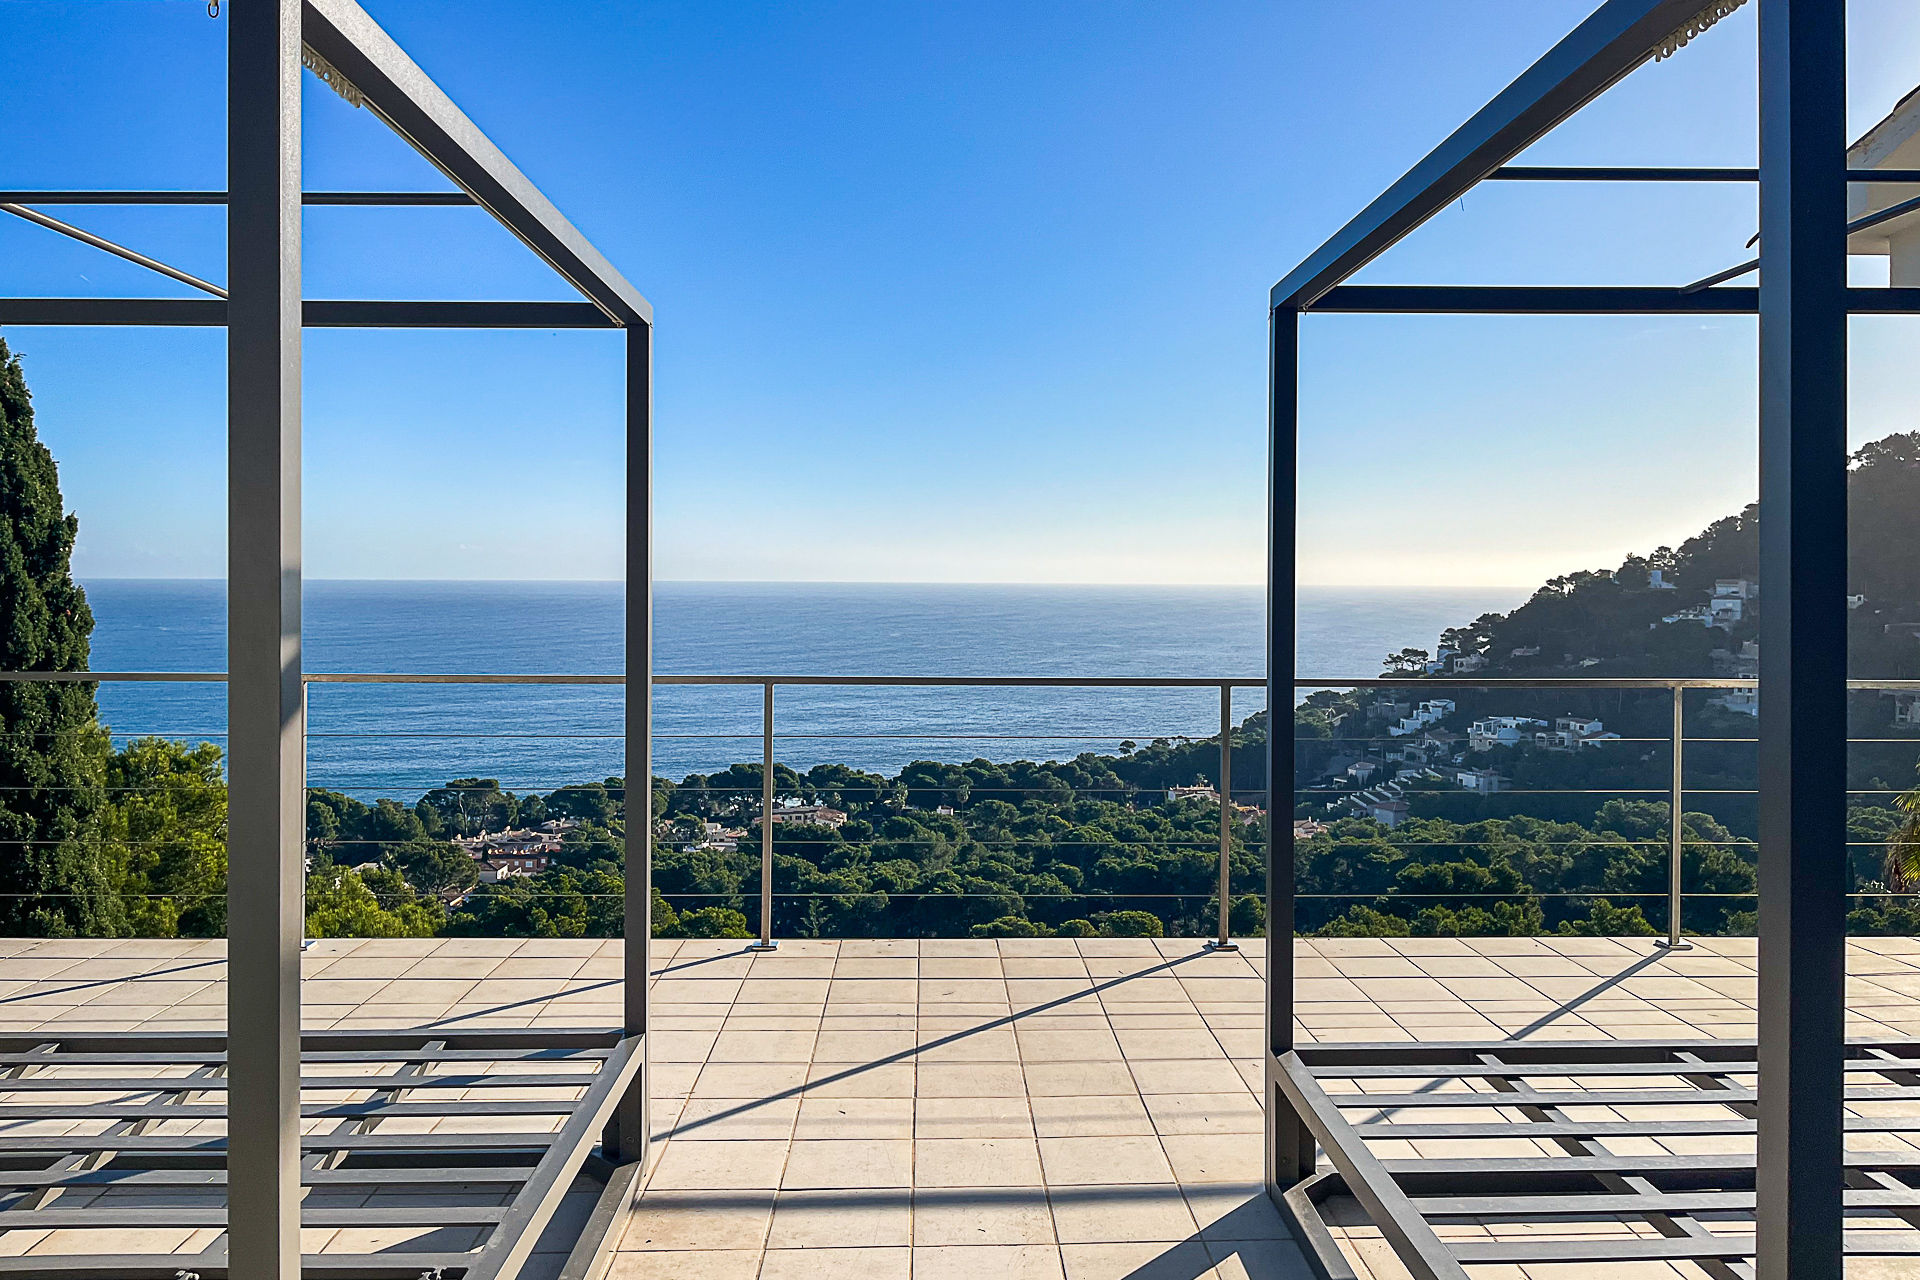 Modernes Penthouse mit Meerblick, Ferienvermietlizenz und exklusivem Komfort, 07589 Canyamel (Spanien), Dachgeschosswohnung